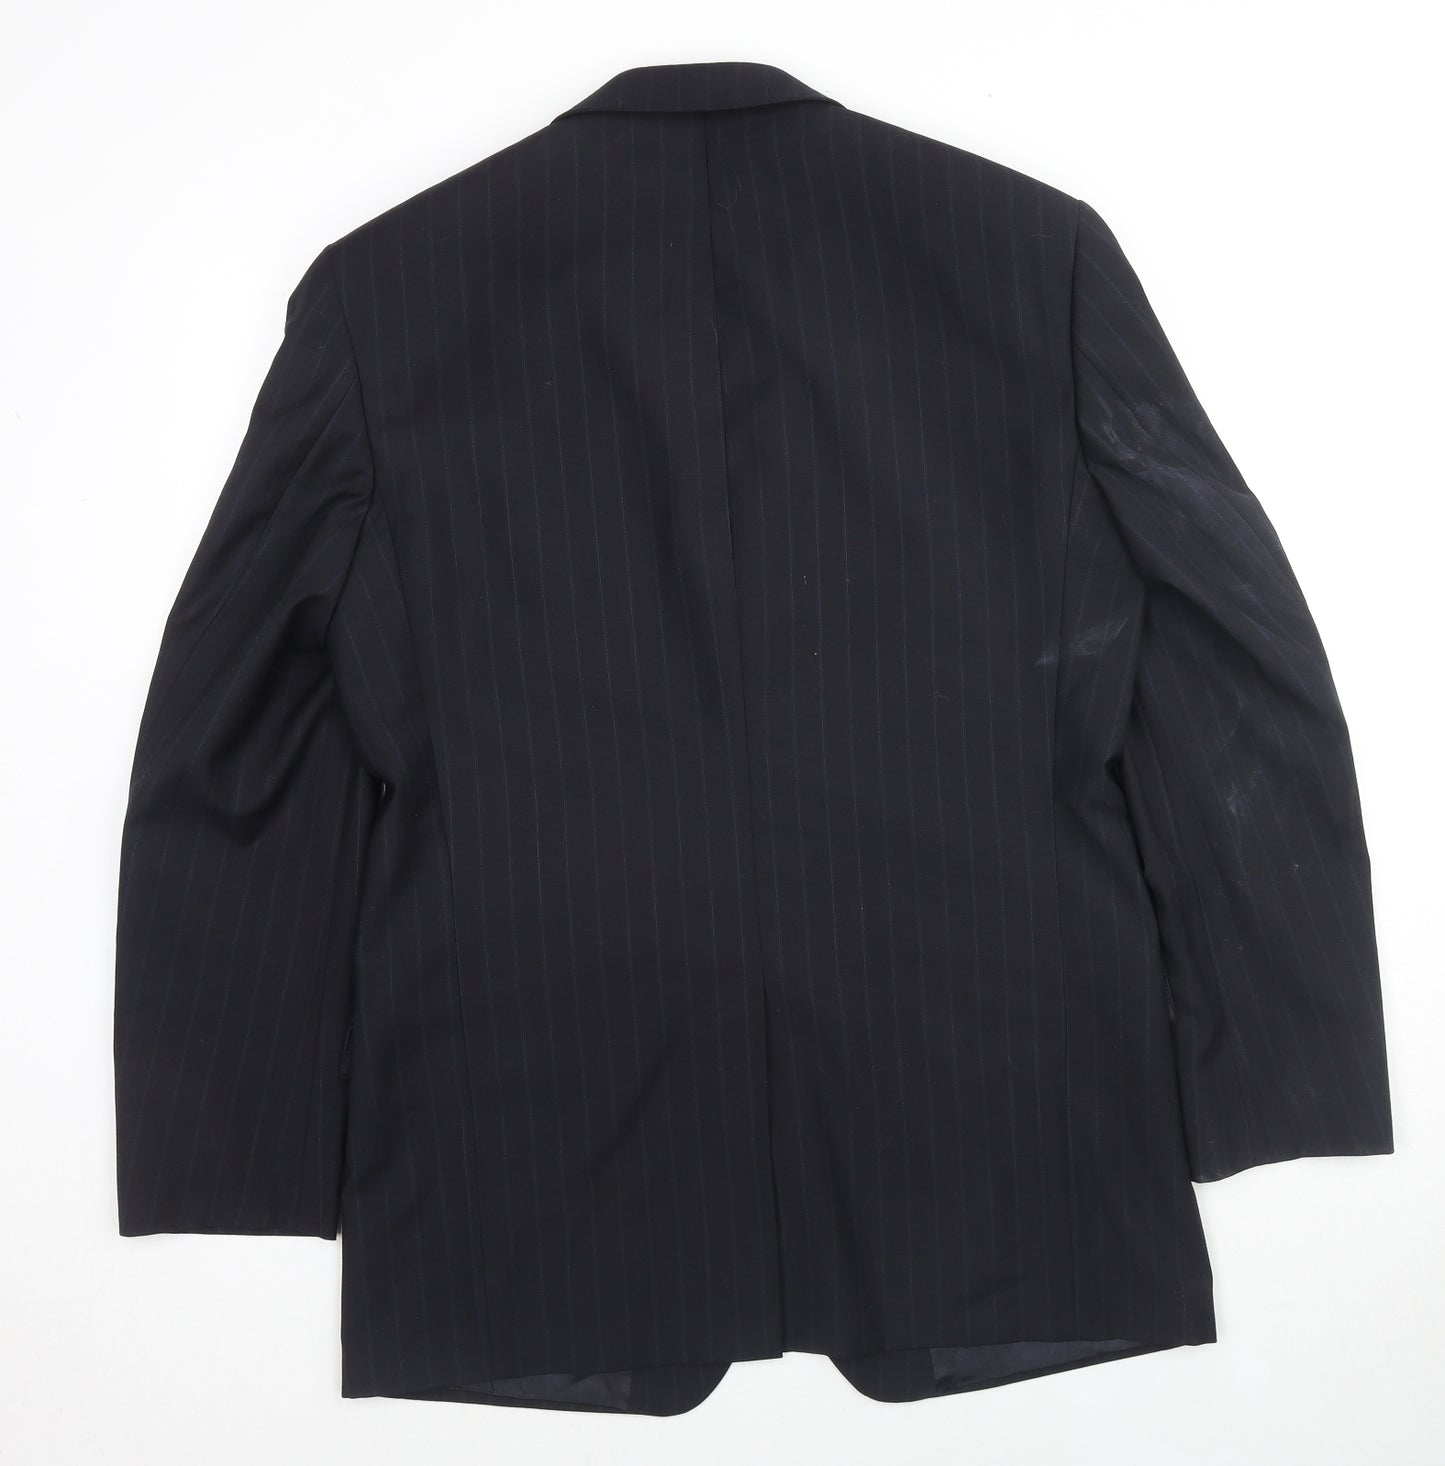 Balmain Paris Mens Black Striped Wool Jacket Suit Jacket Size 40 Regular